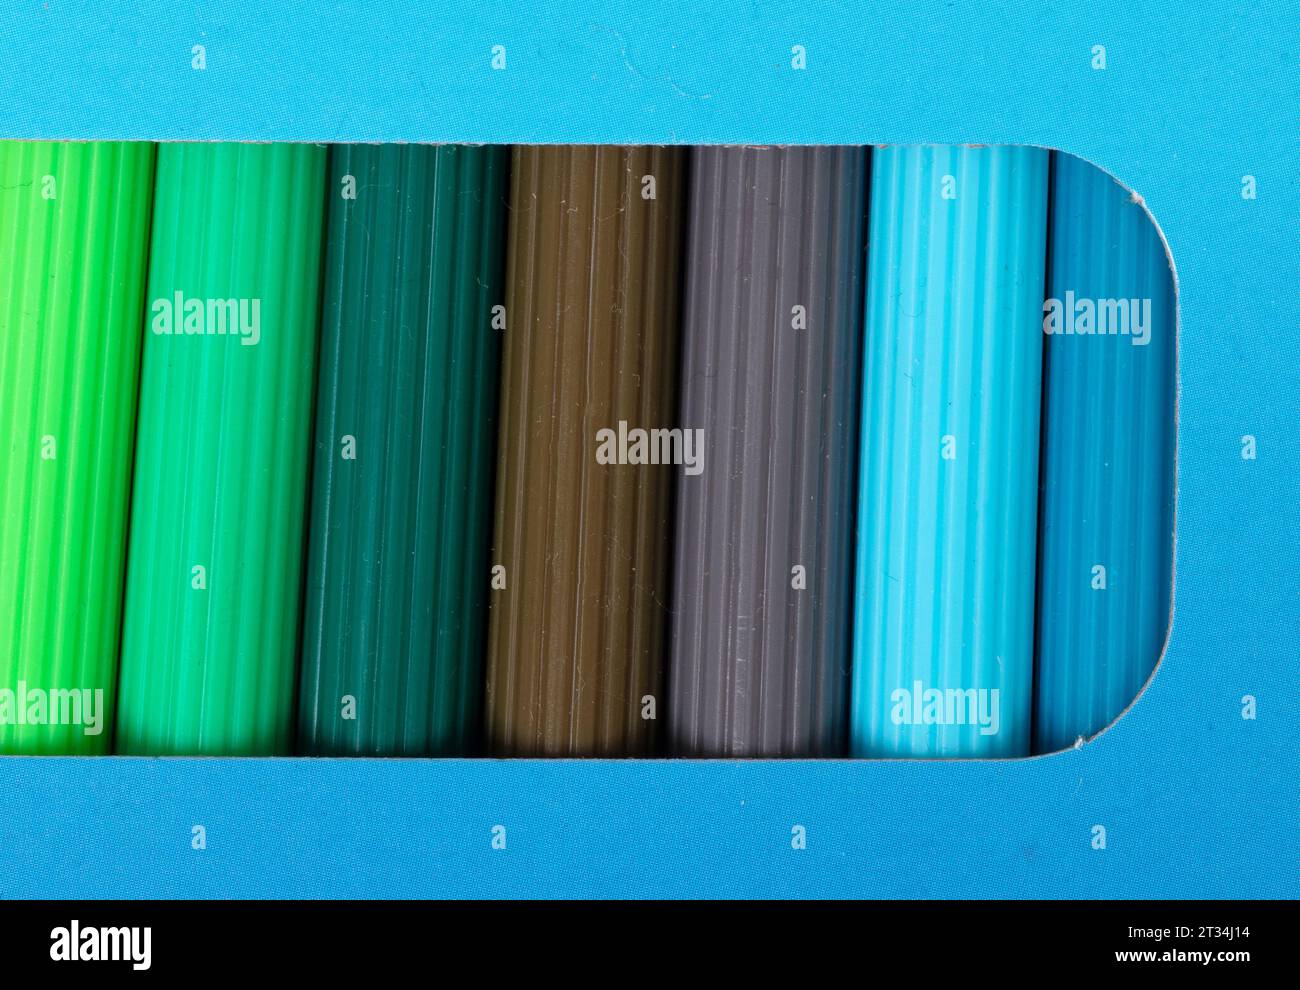 Rangée de feutres colorés dans un emballage, plein cadre Banque D'Images